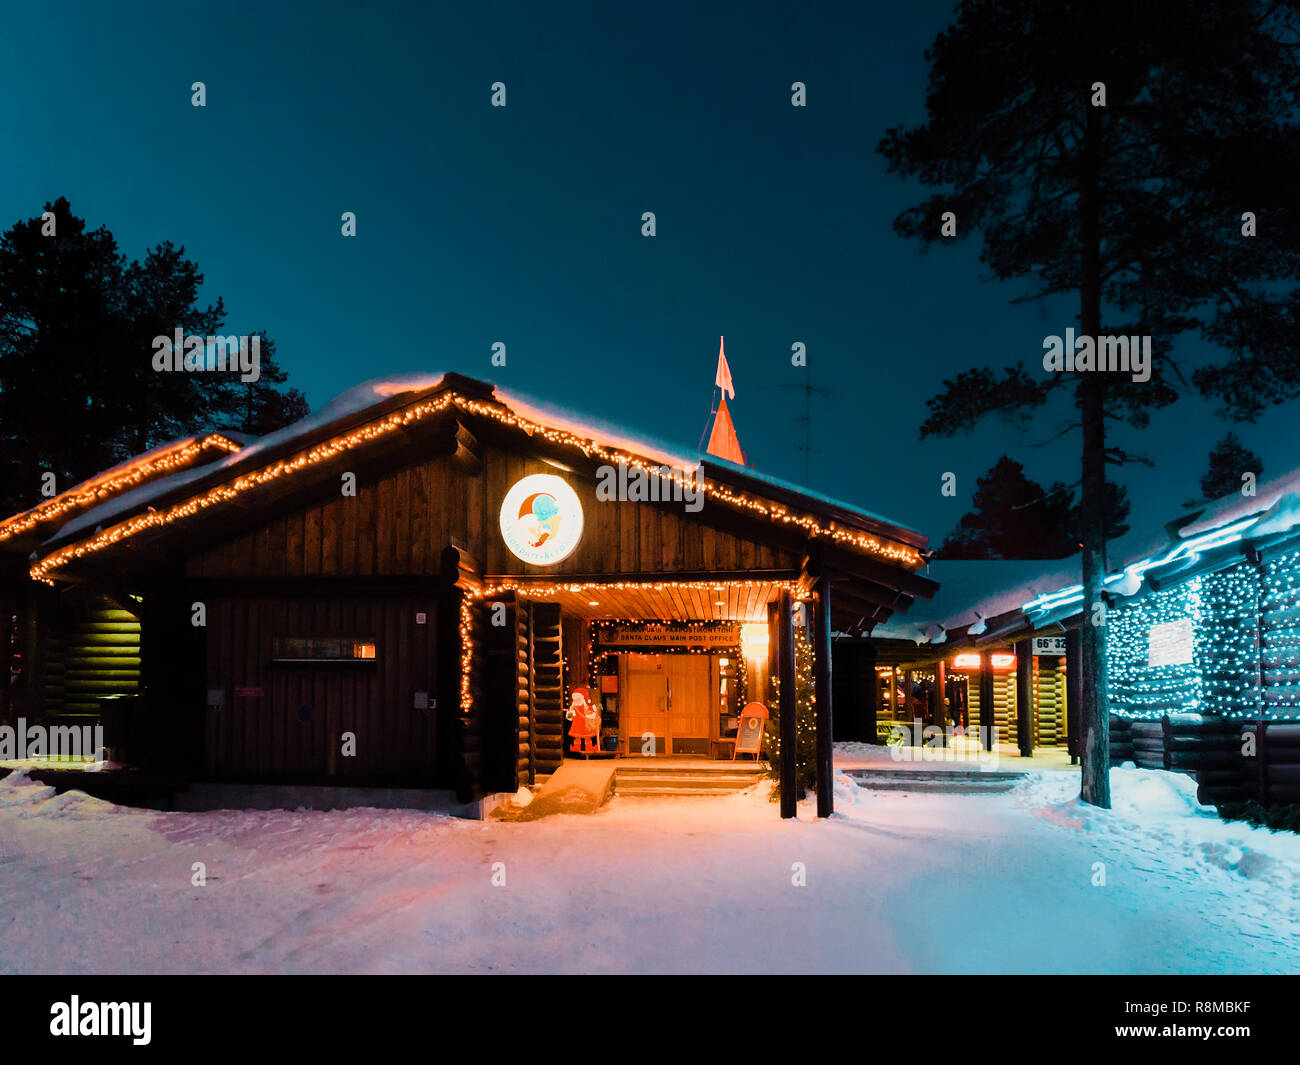 Rovaniemi, Finlande - mars 6, 2017 : Le Père Noël au Village avec des arbres de Noël Le Père Noël en Laponie finlandaise. En Scandinavie, le Cercle arctique en hiver. La nuit. Piscine Banque D'Images